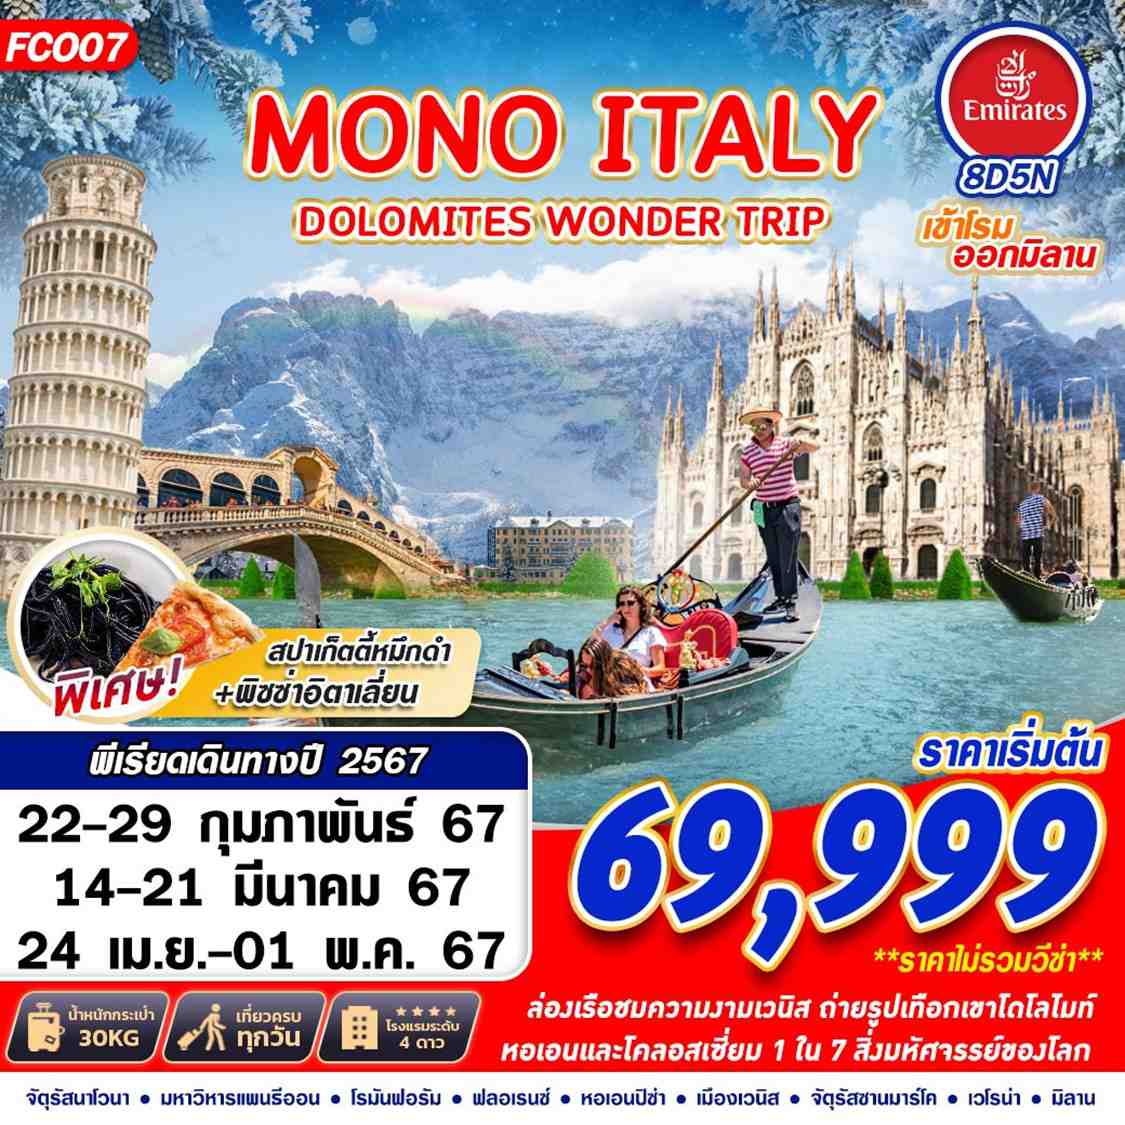 ทัวร์อิตาลี MONO ITALY DOLOMITES WONDER TRIP 8วัน 5คืน